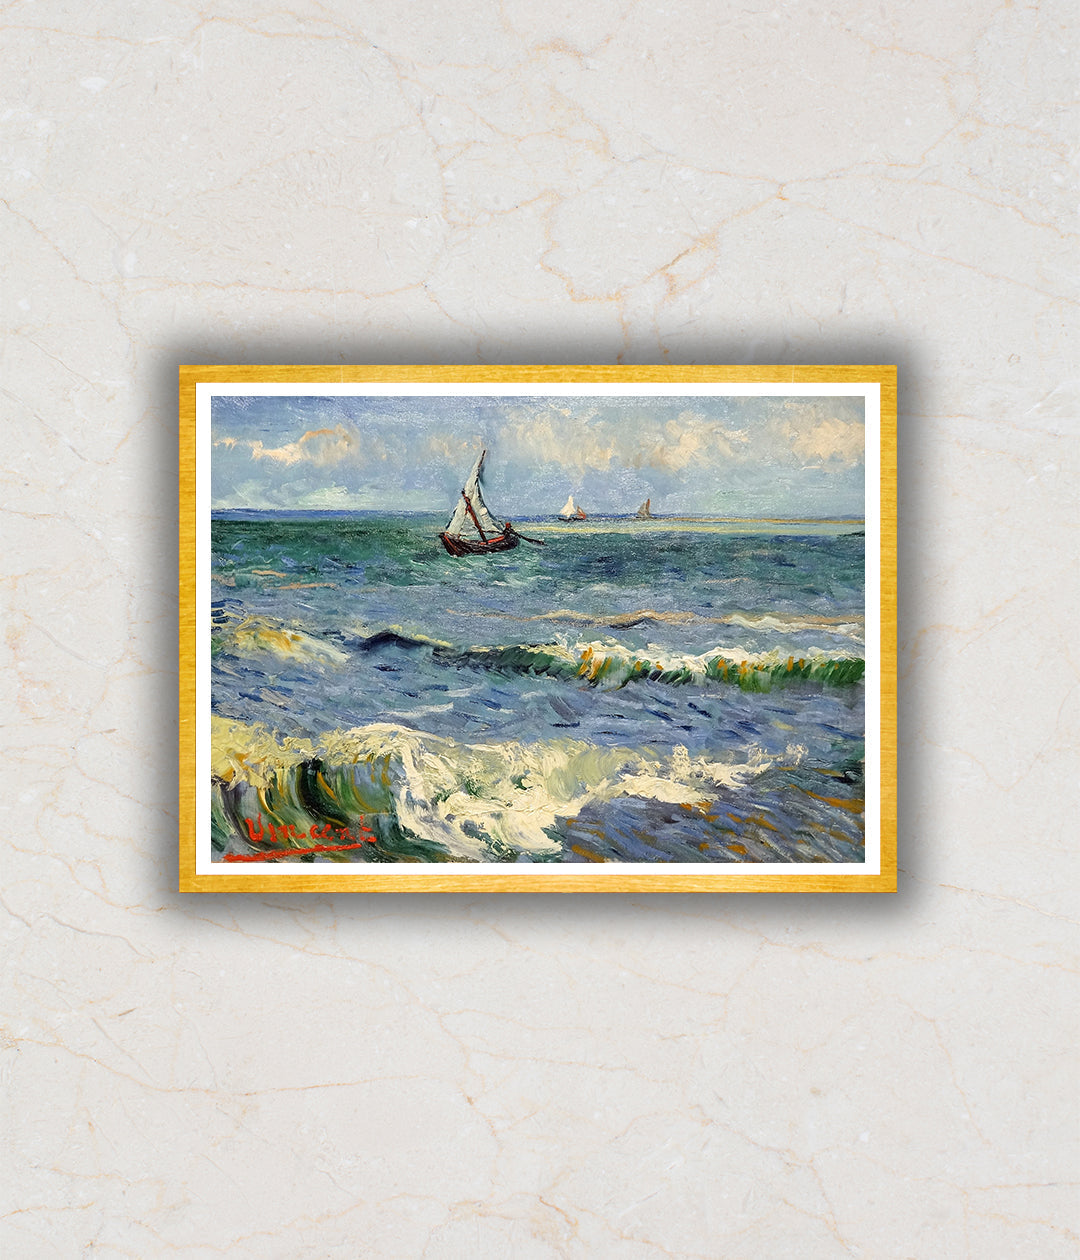 The Sea at Les Saintes-Maries-de-la-Mer Artwork Painting For Home Wall Art D�_cor By Vincent Van Gogh